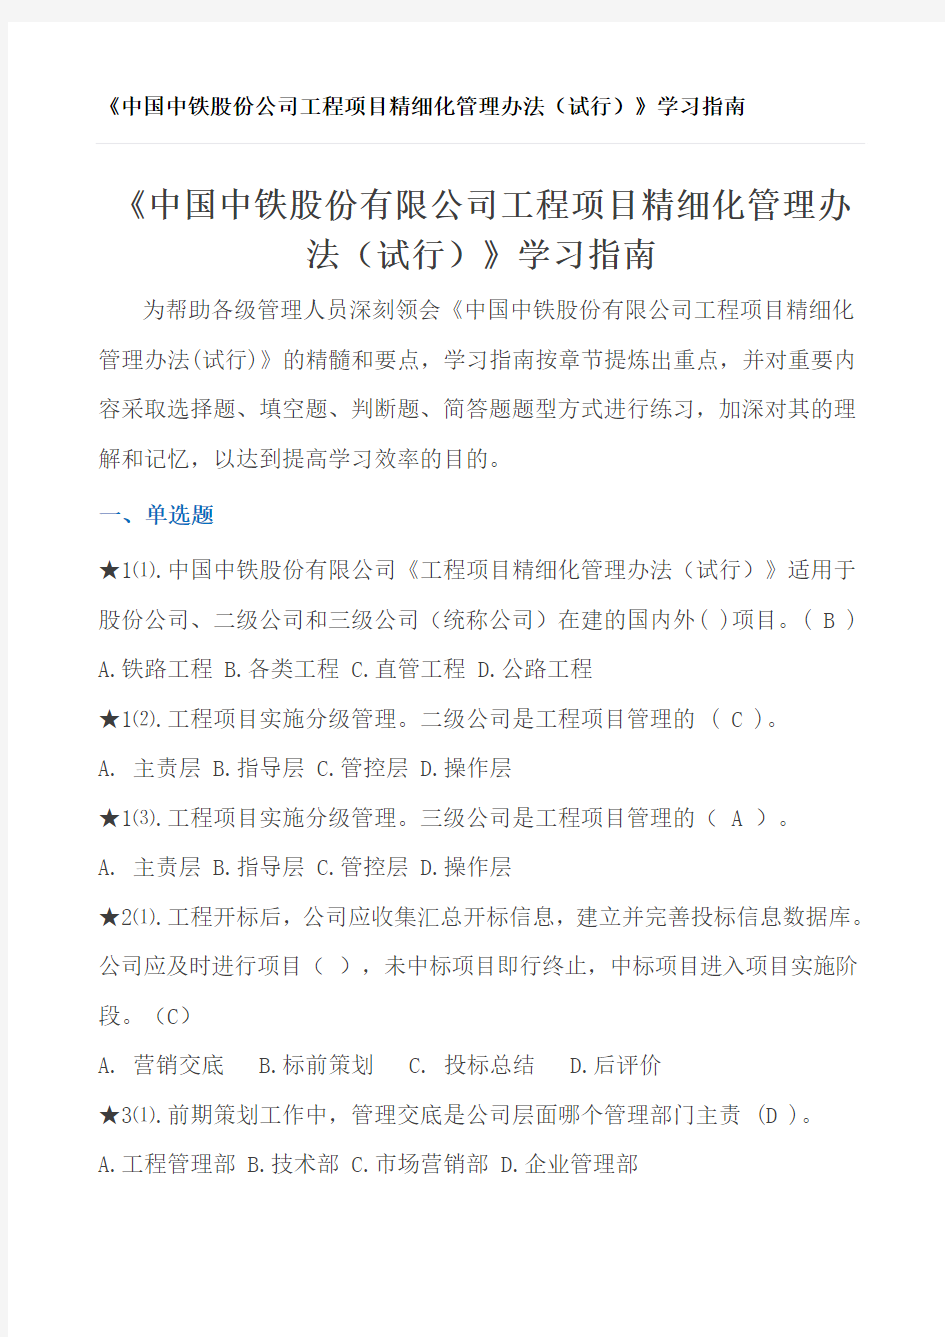 中国中铁股份公司工程项目精细化管理办法